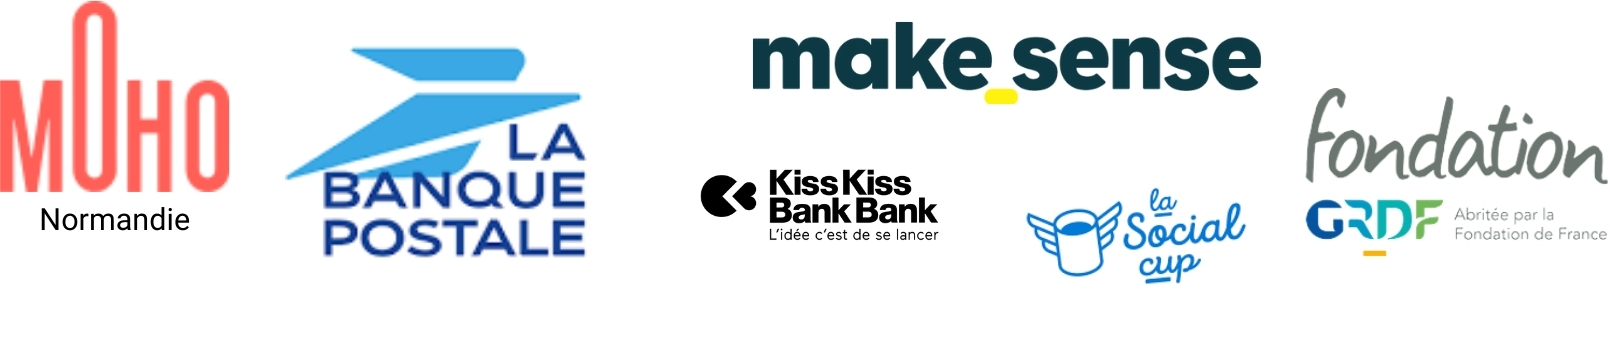 MoHo, La Banque Postale, Make Sense, Kiss Kiss Bank Bank, La Social Cup & Fondation GRDF